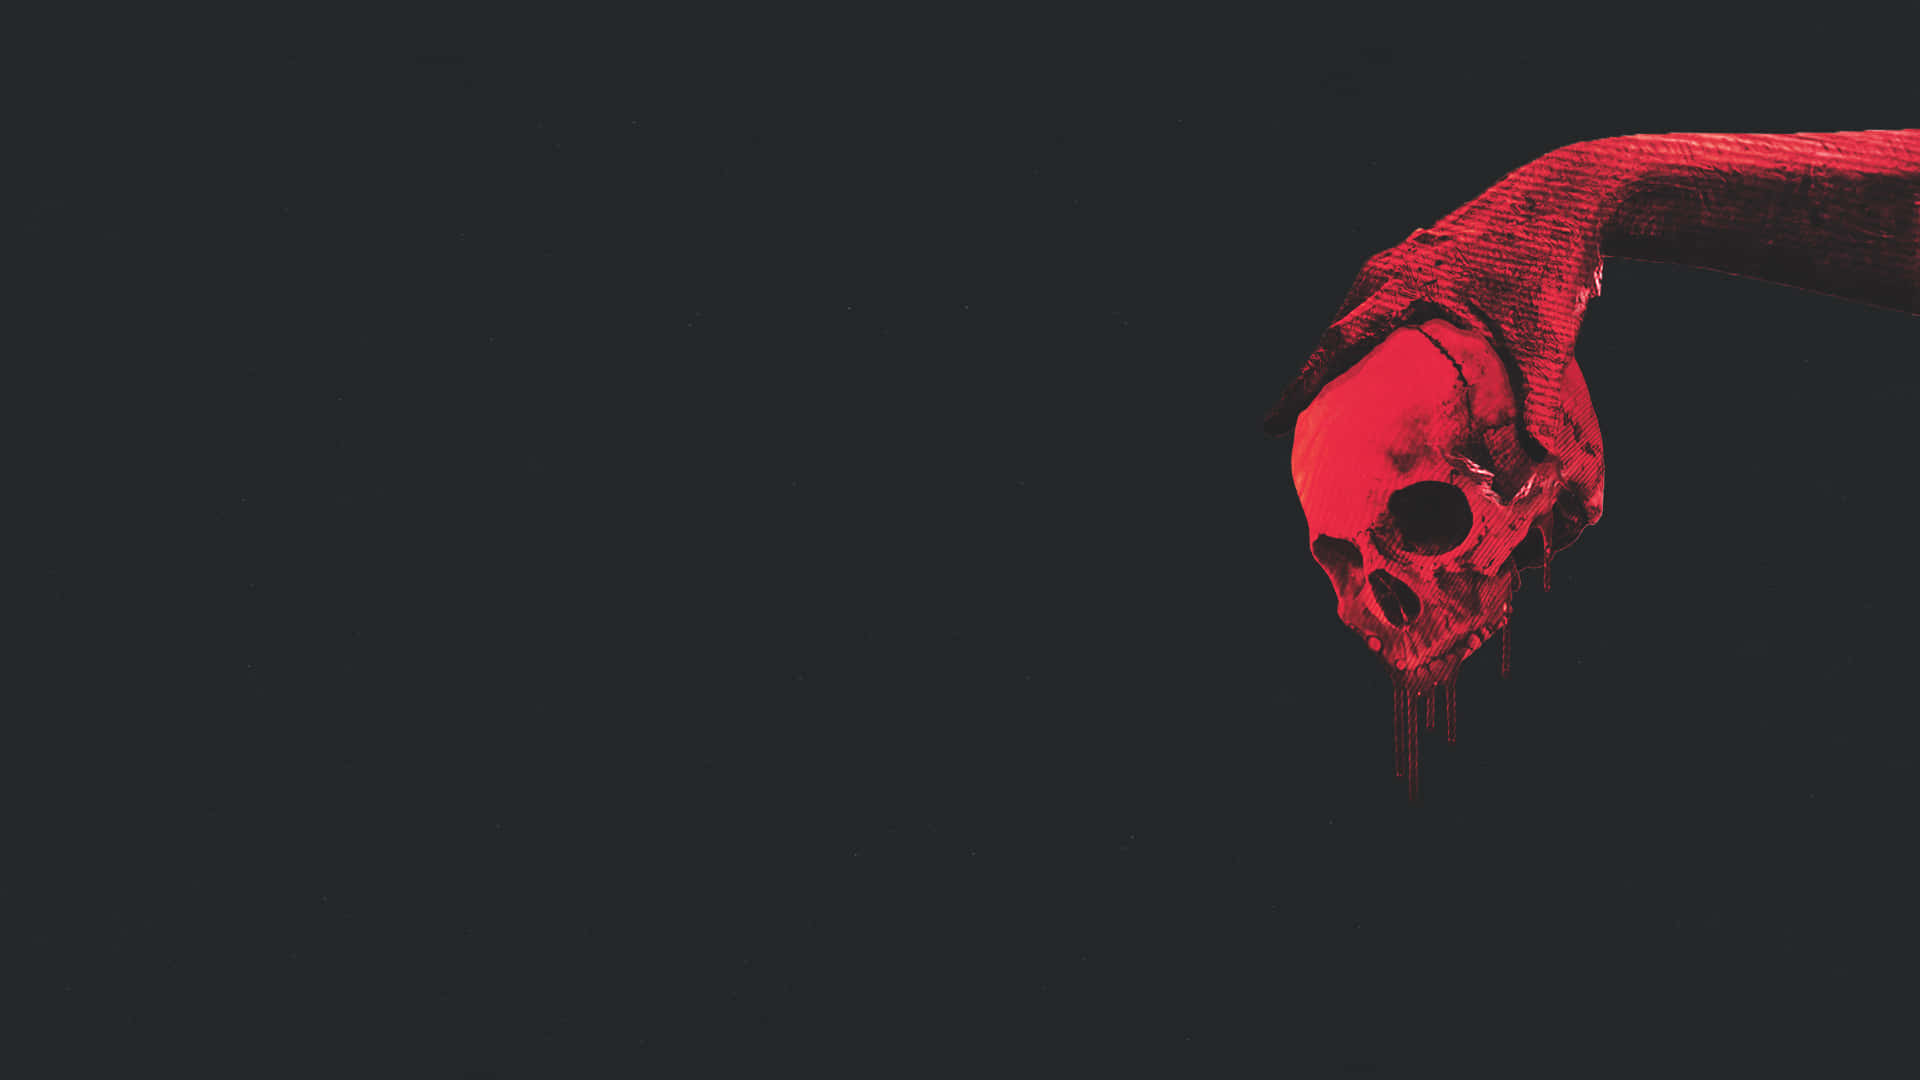 Dark Red Aesthetic Hand Holding A Skull Wallpaper